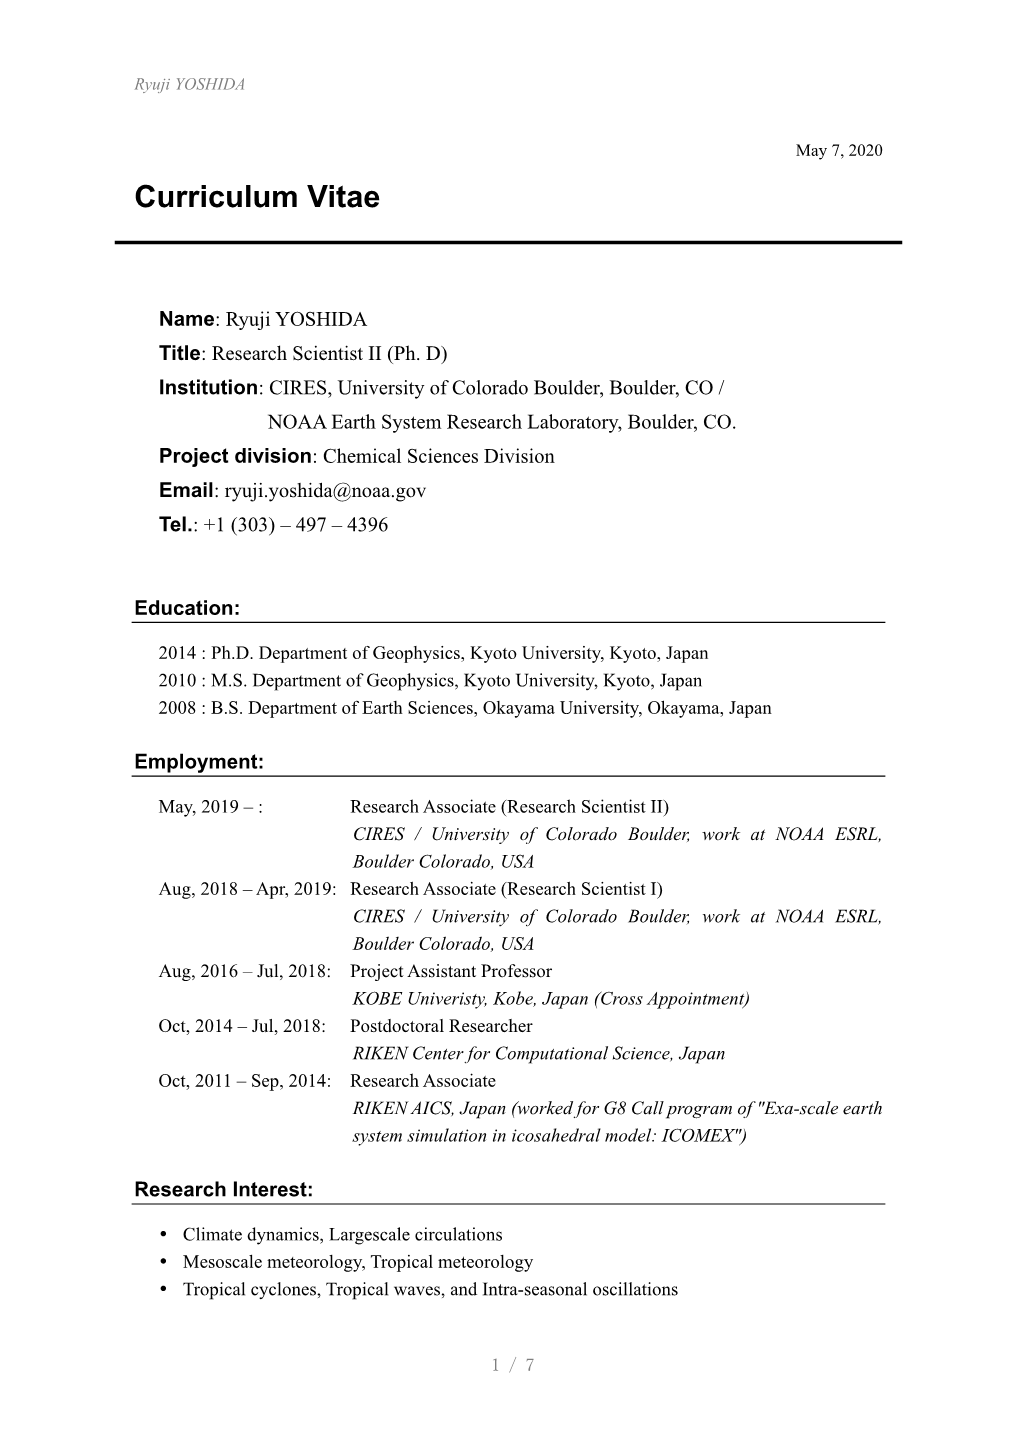 Curriculum Vitae PDF File